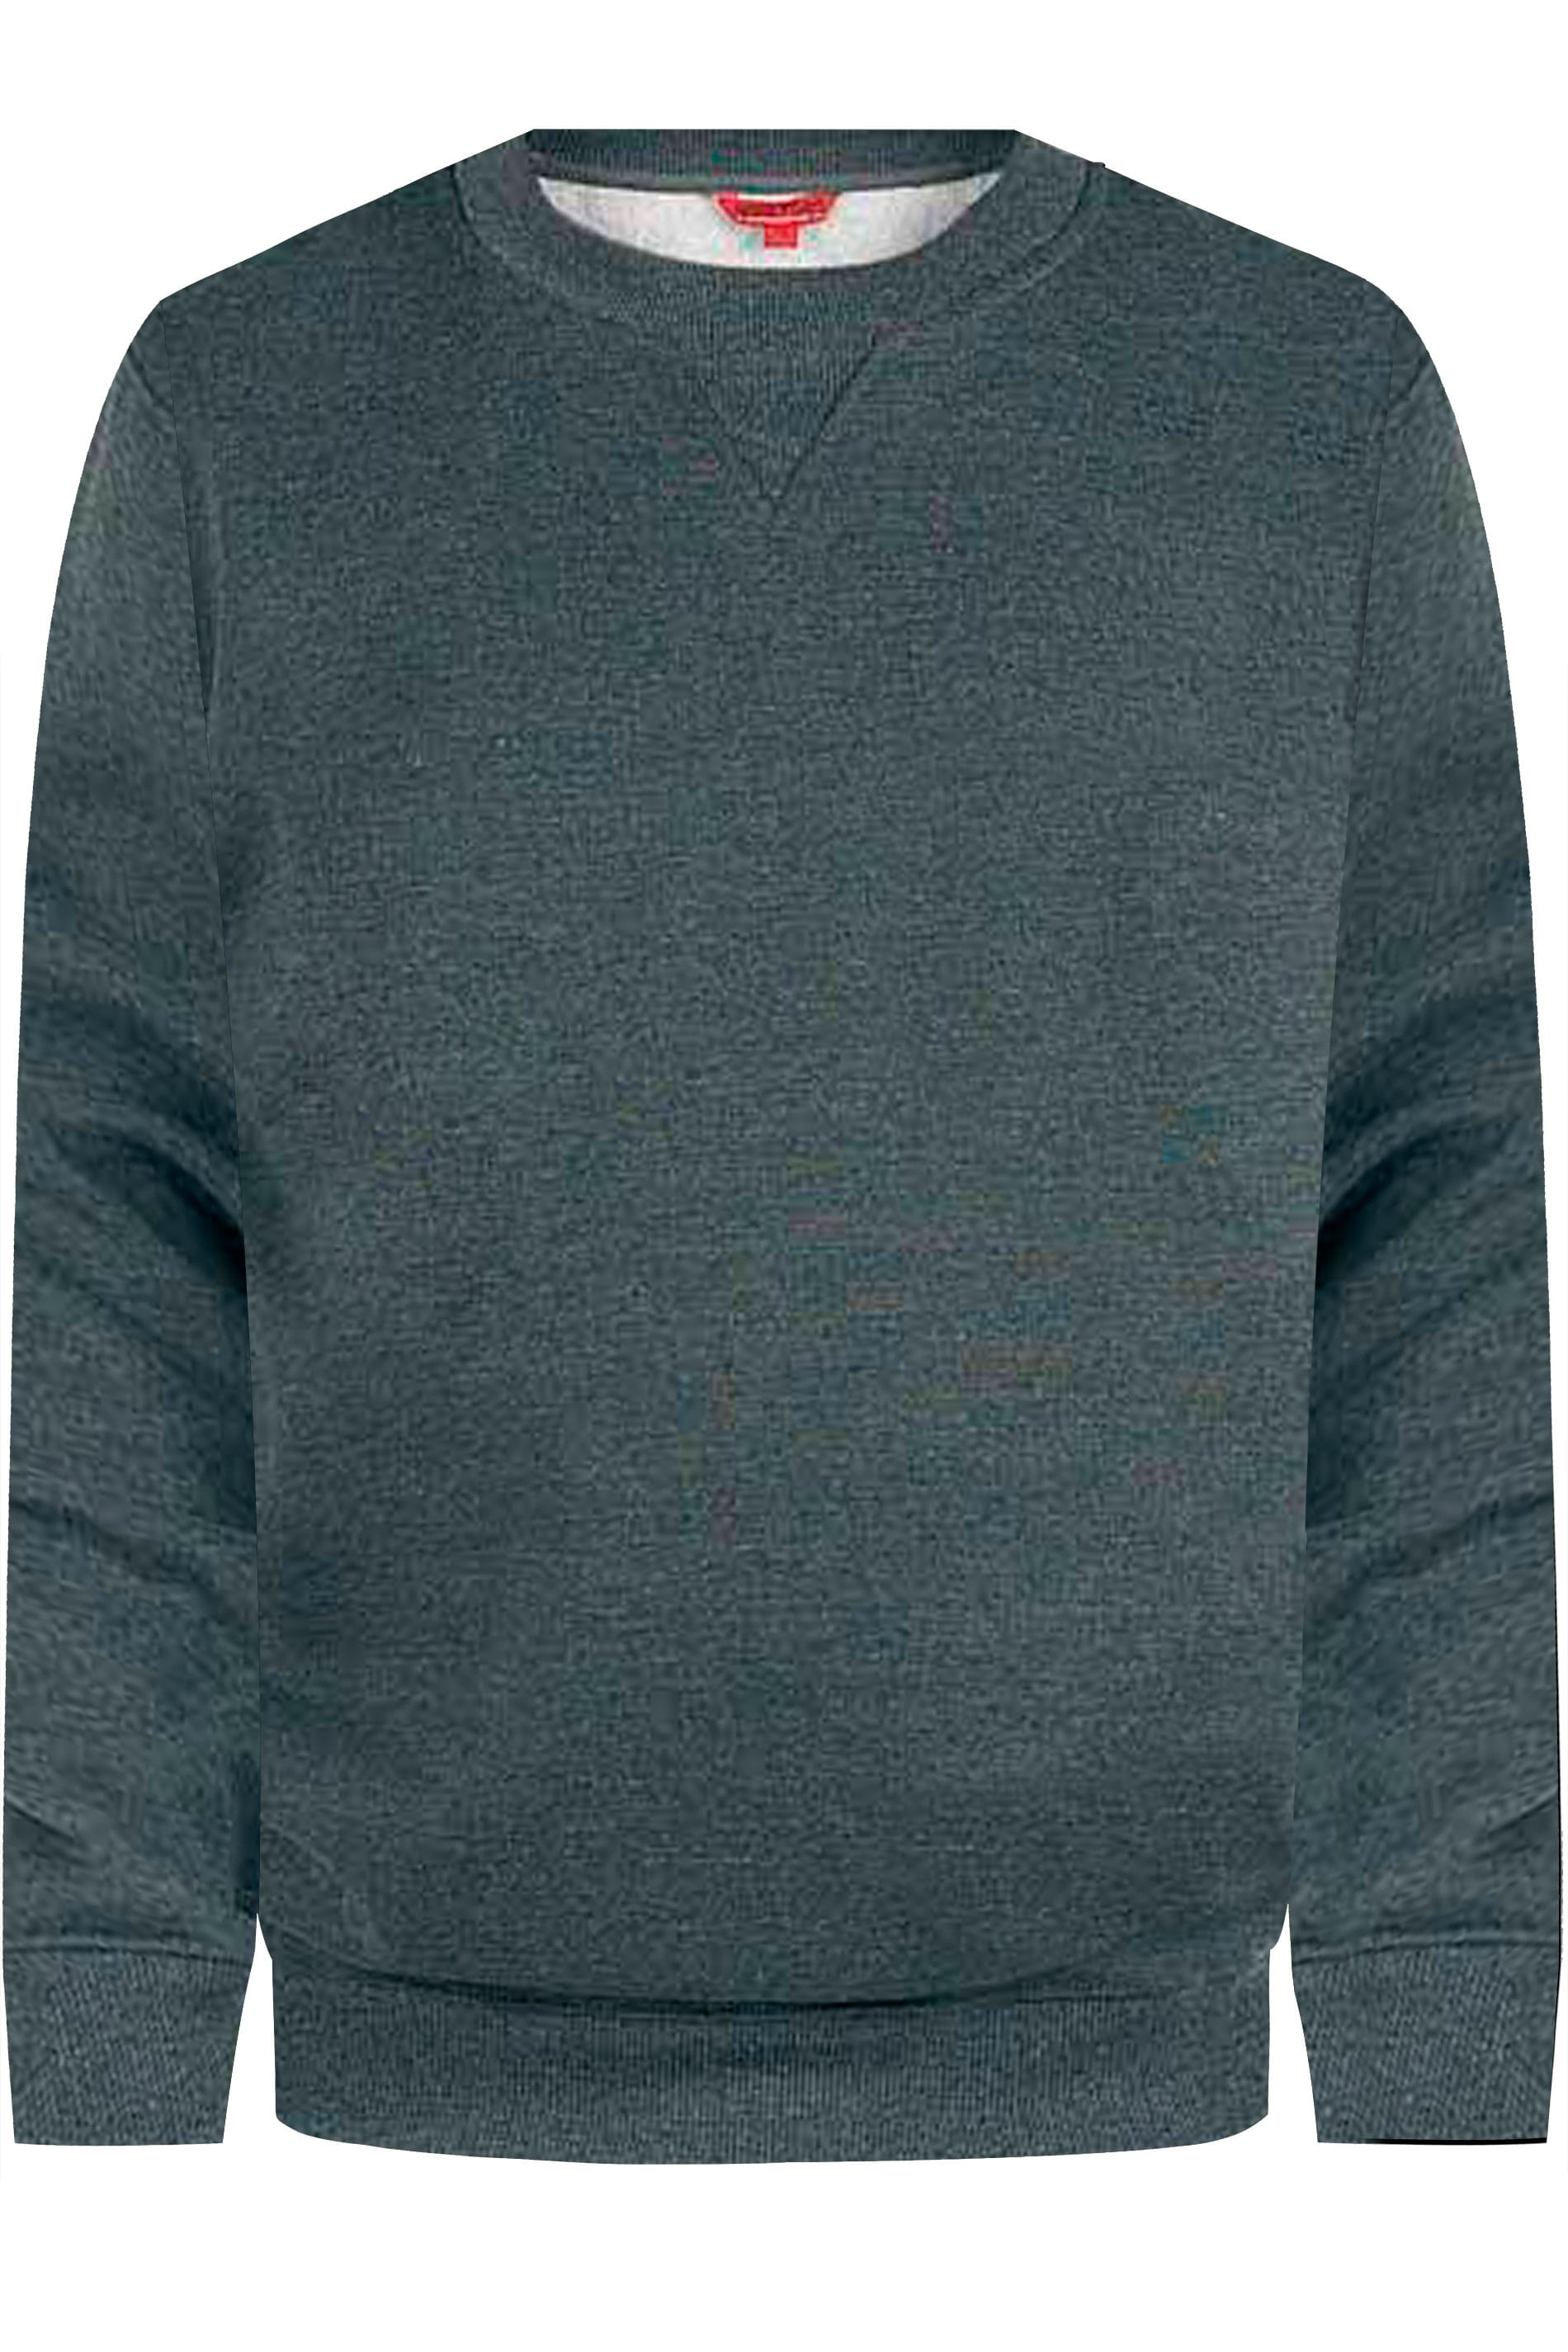 D555 Rockford Grey Sweatshirt | BadRhino 2